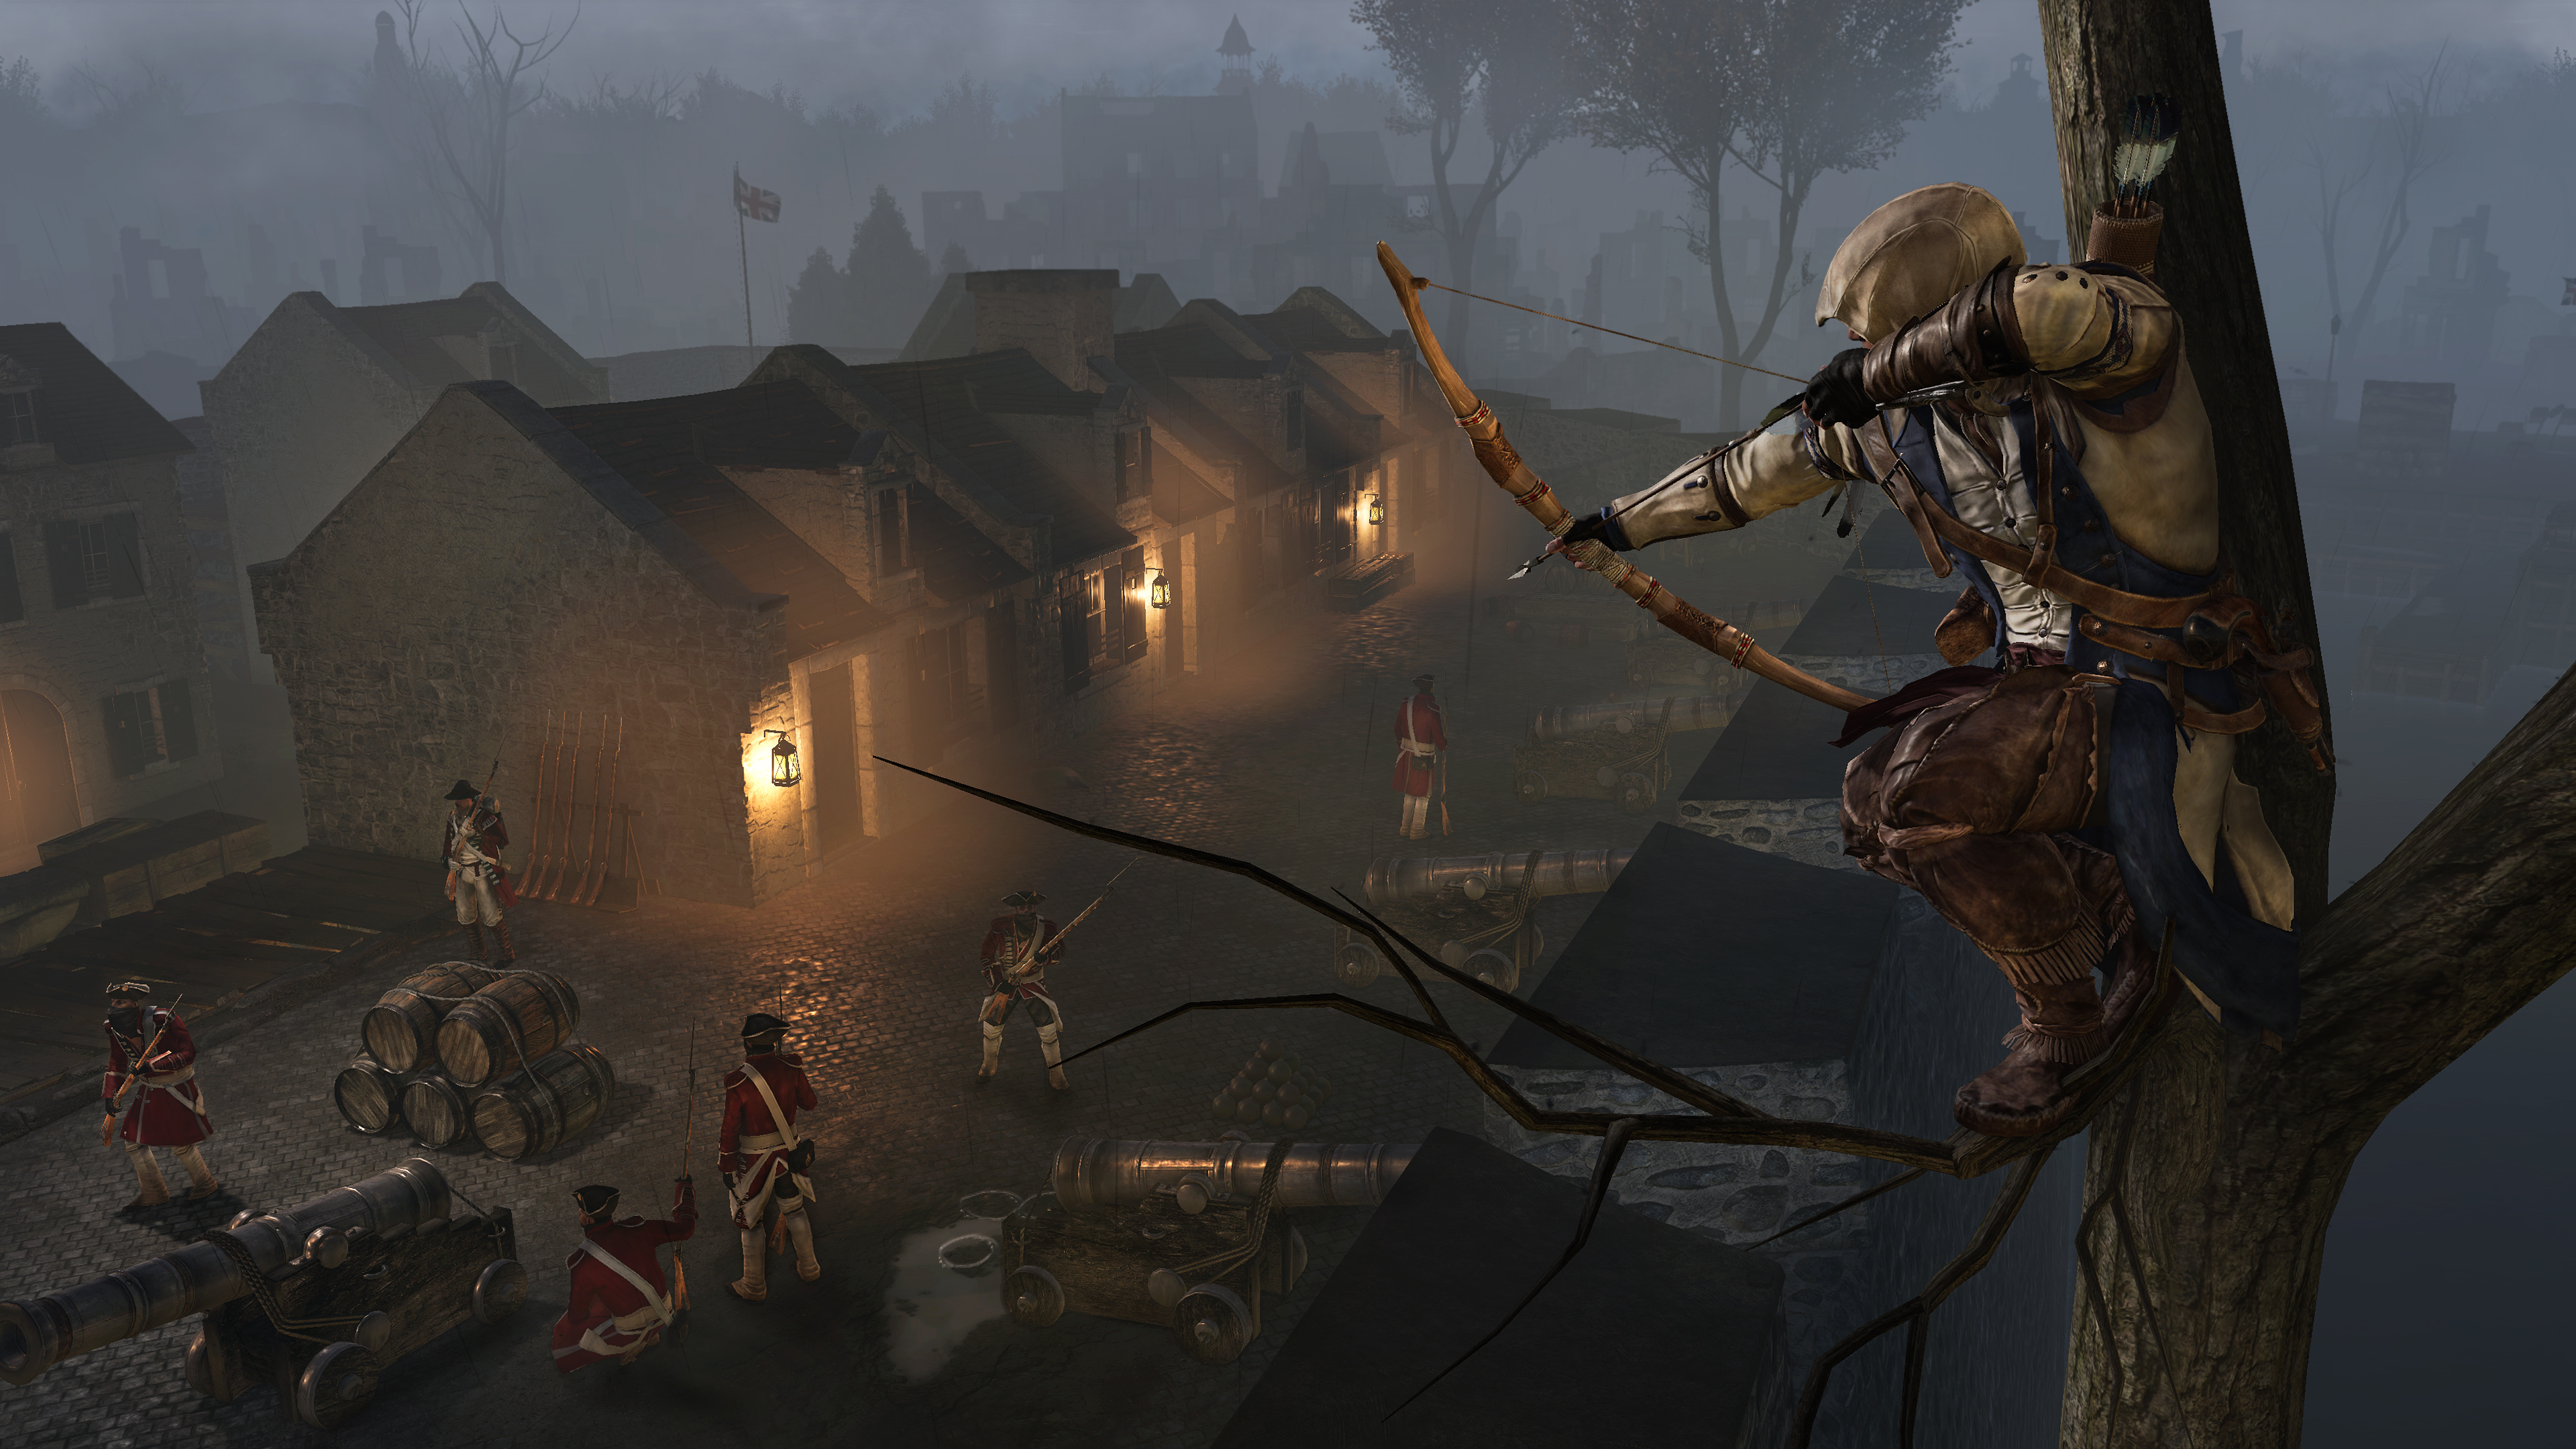 Популярные заставки и фоны Assassin's Creed Iii Ремастеринг на компьютер